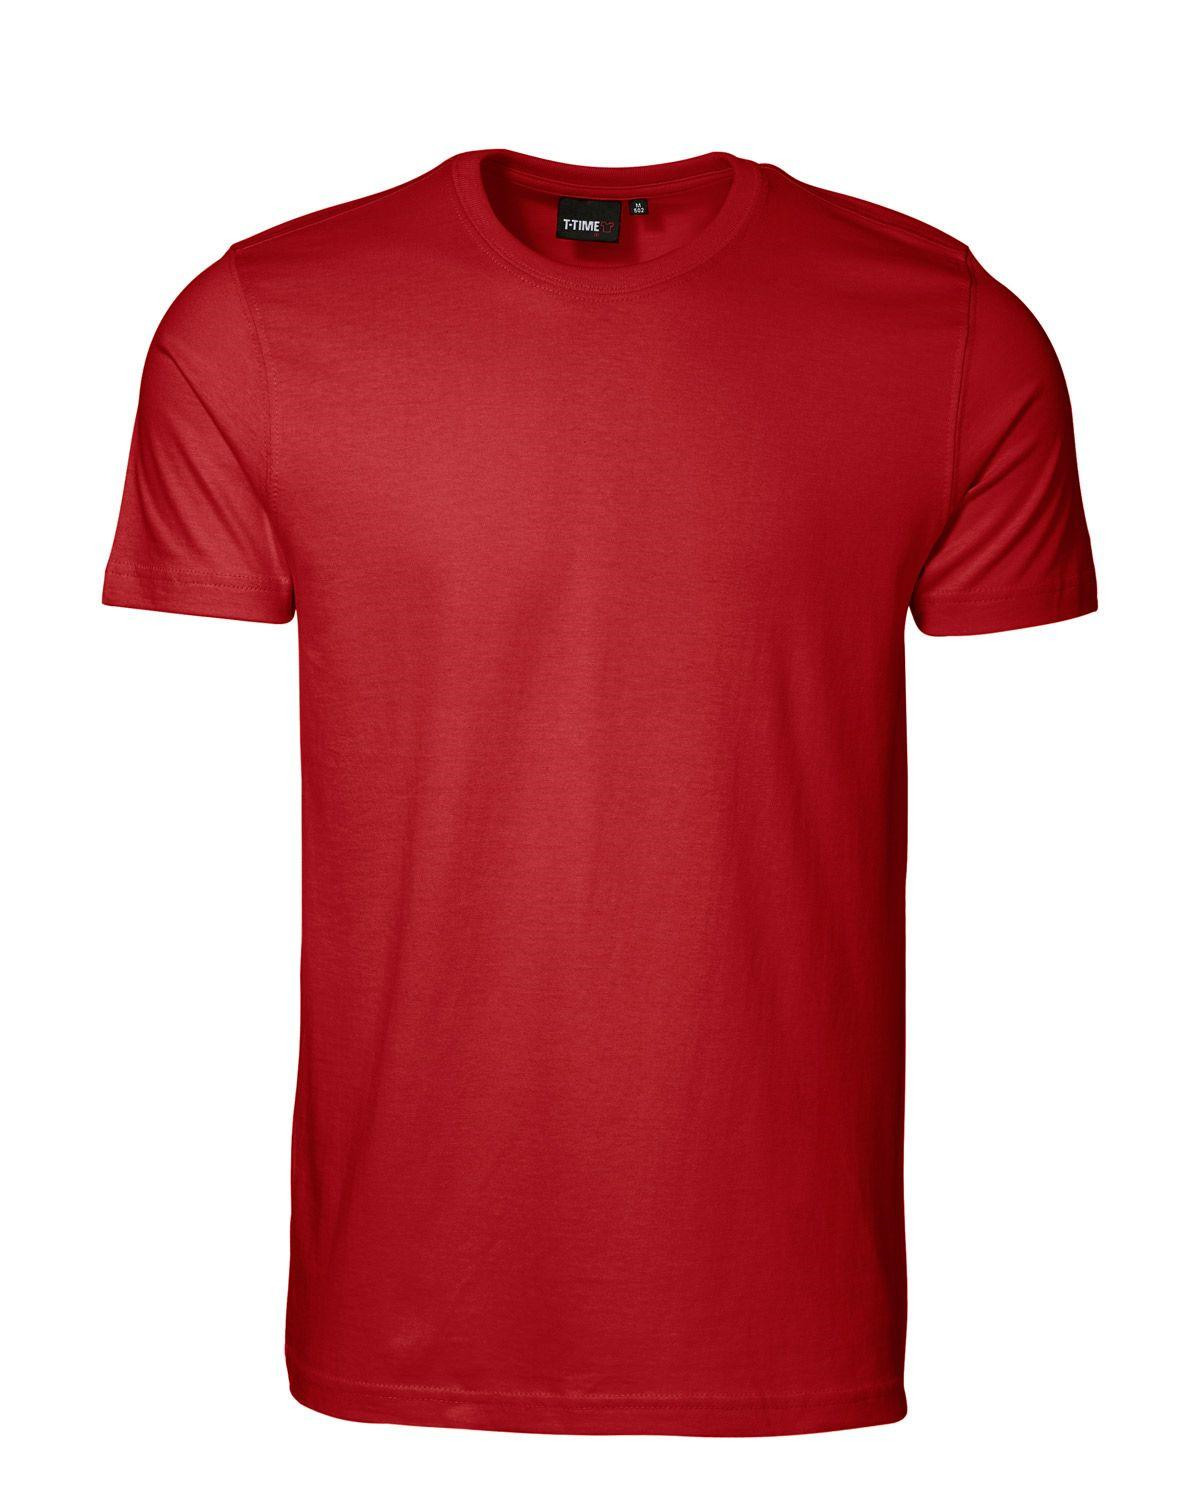 ID T-shirt, Sporty-Fit (Rød, M)